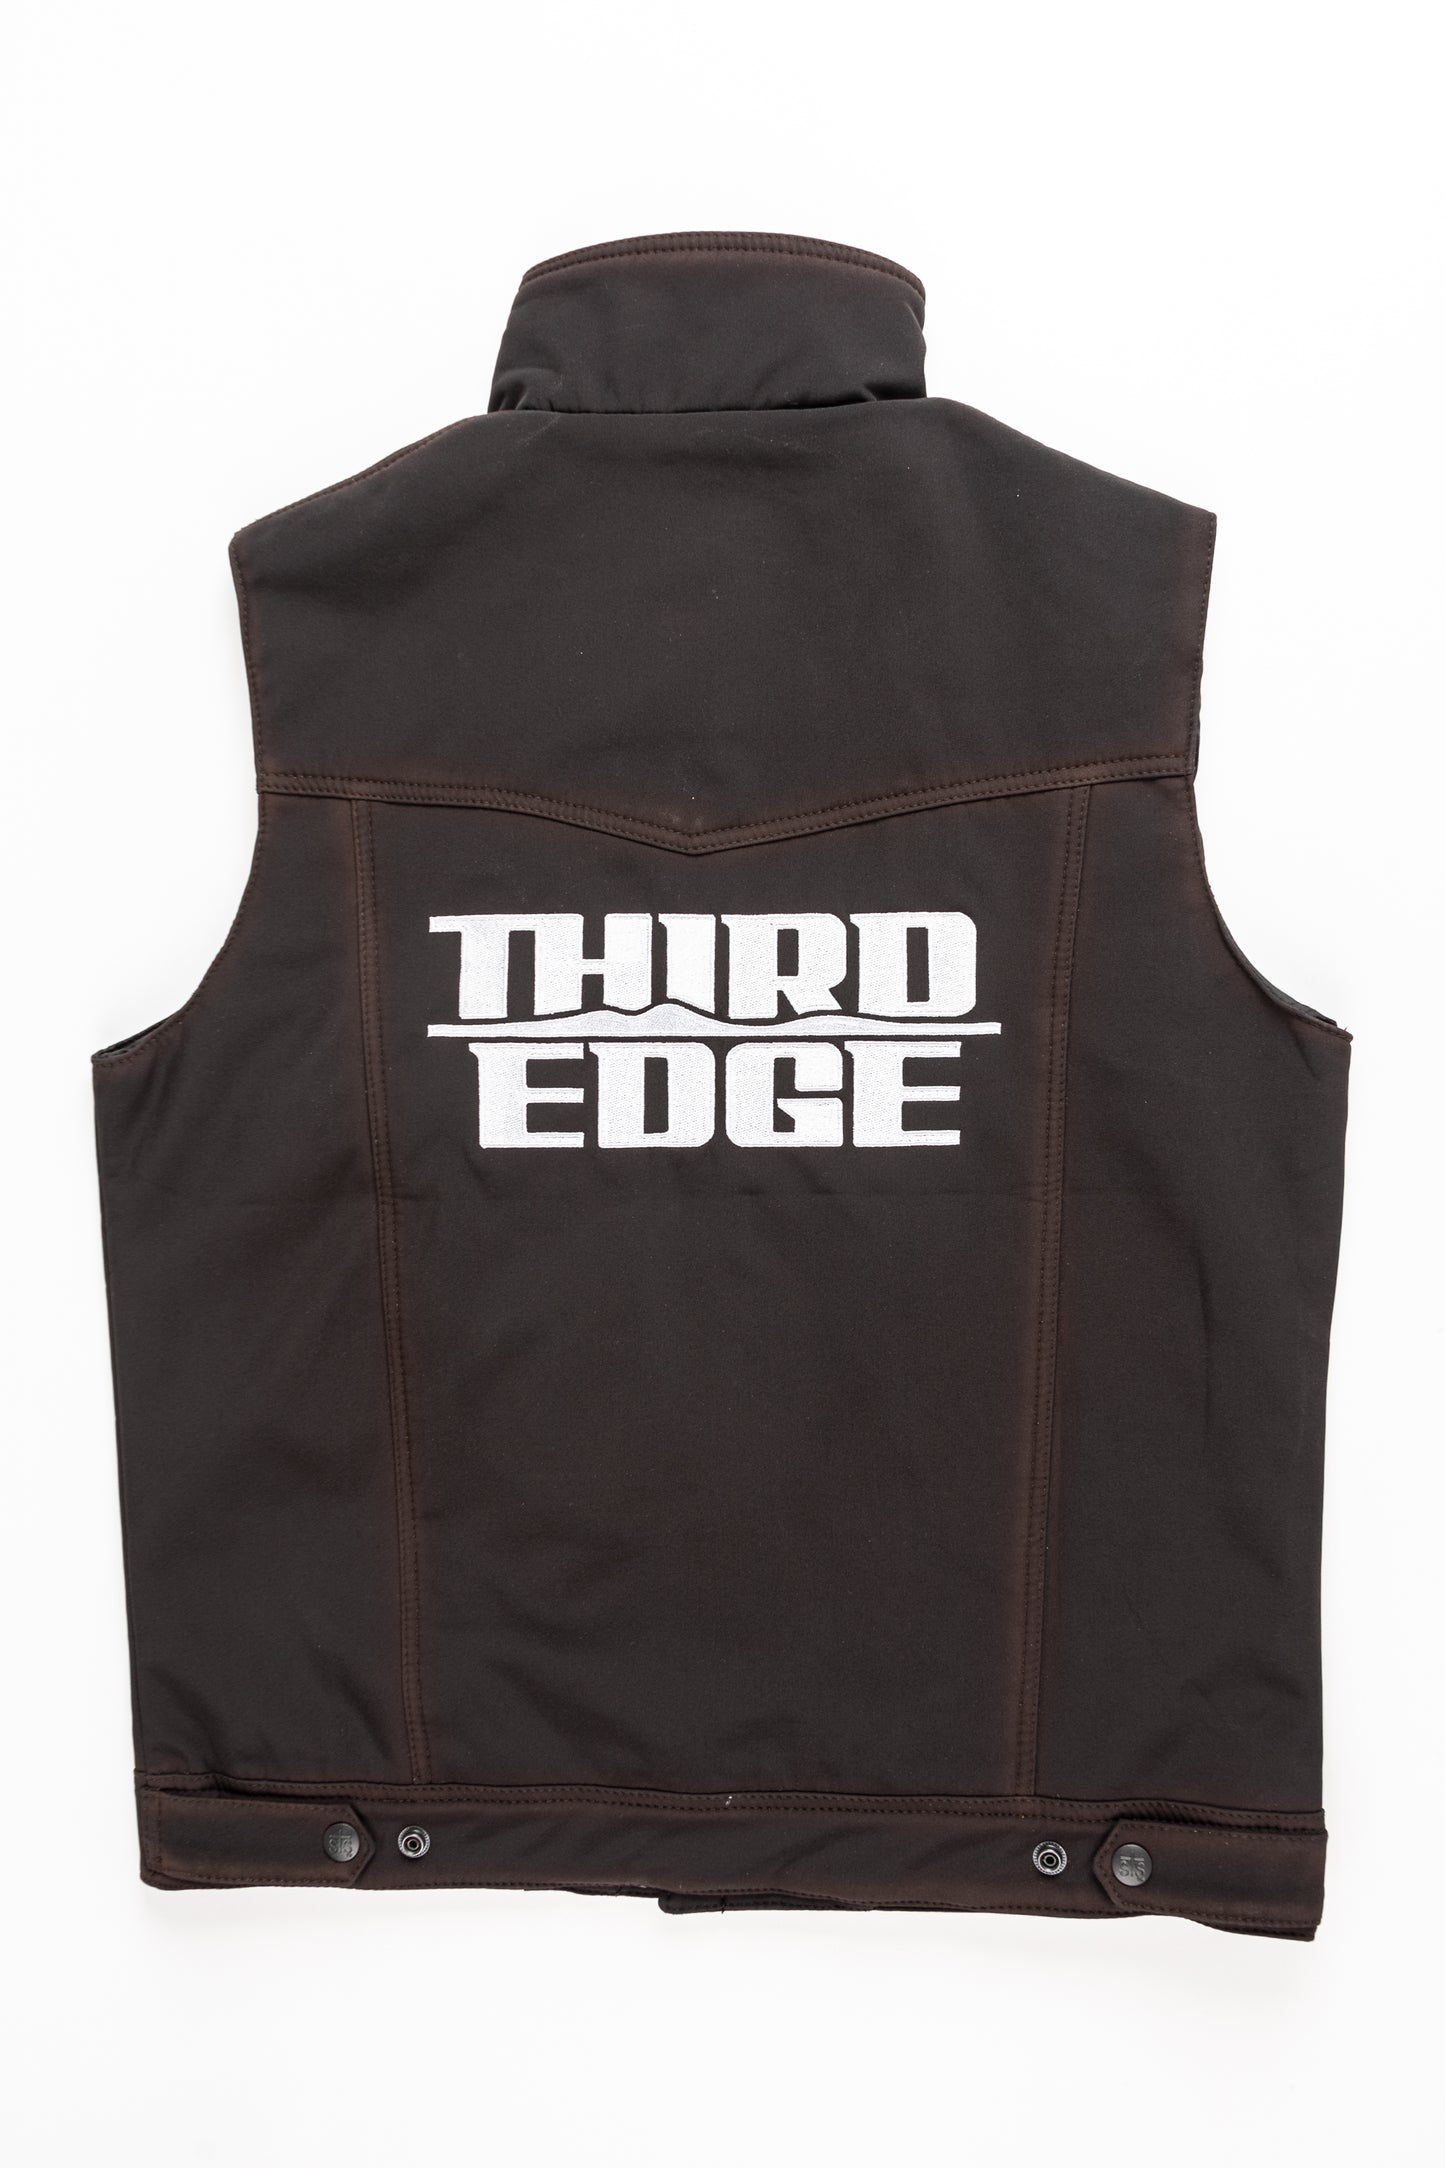 Mens Third Edge Vest